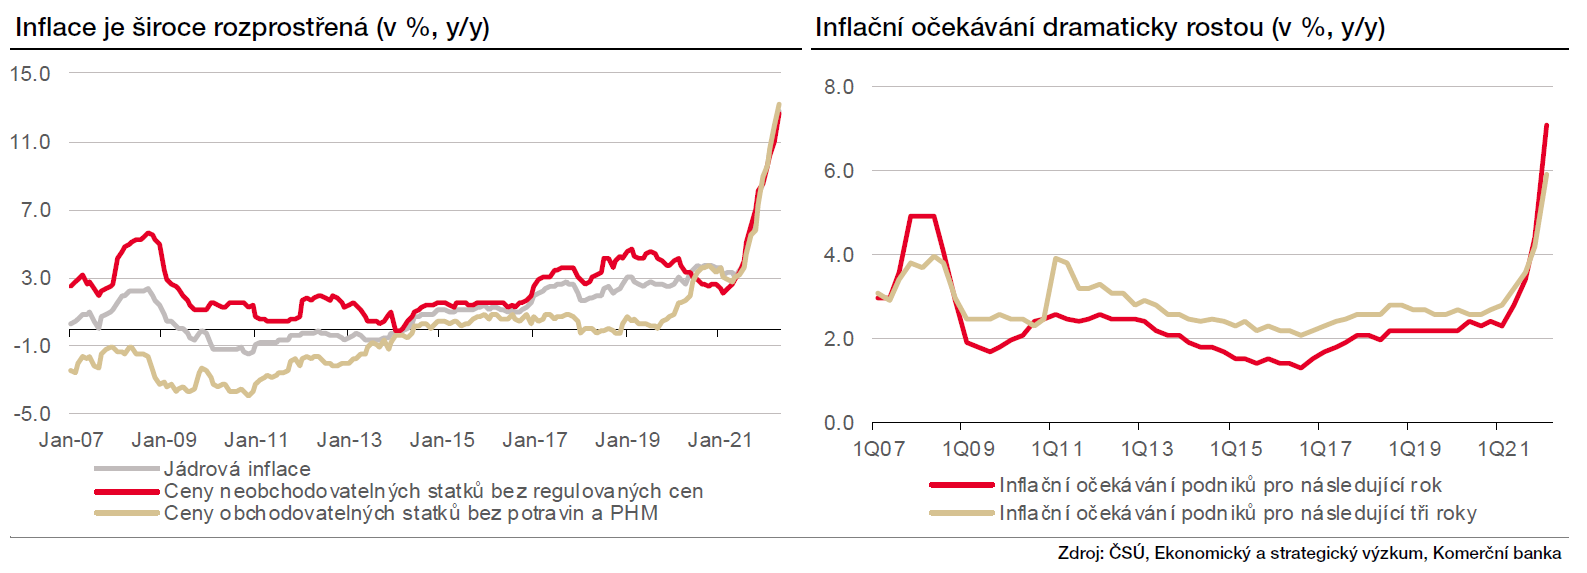 Inflace a inflační očekávání v ČR